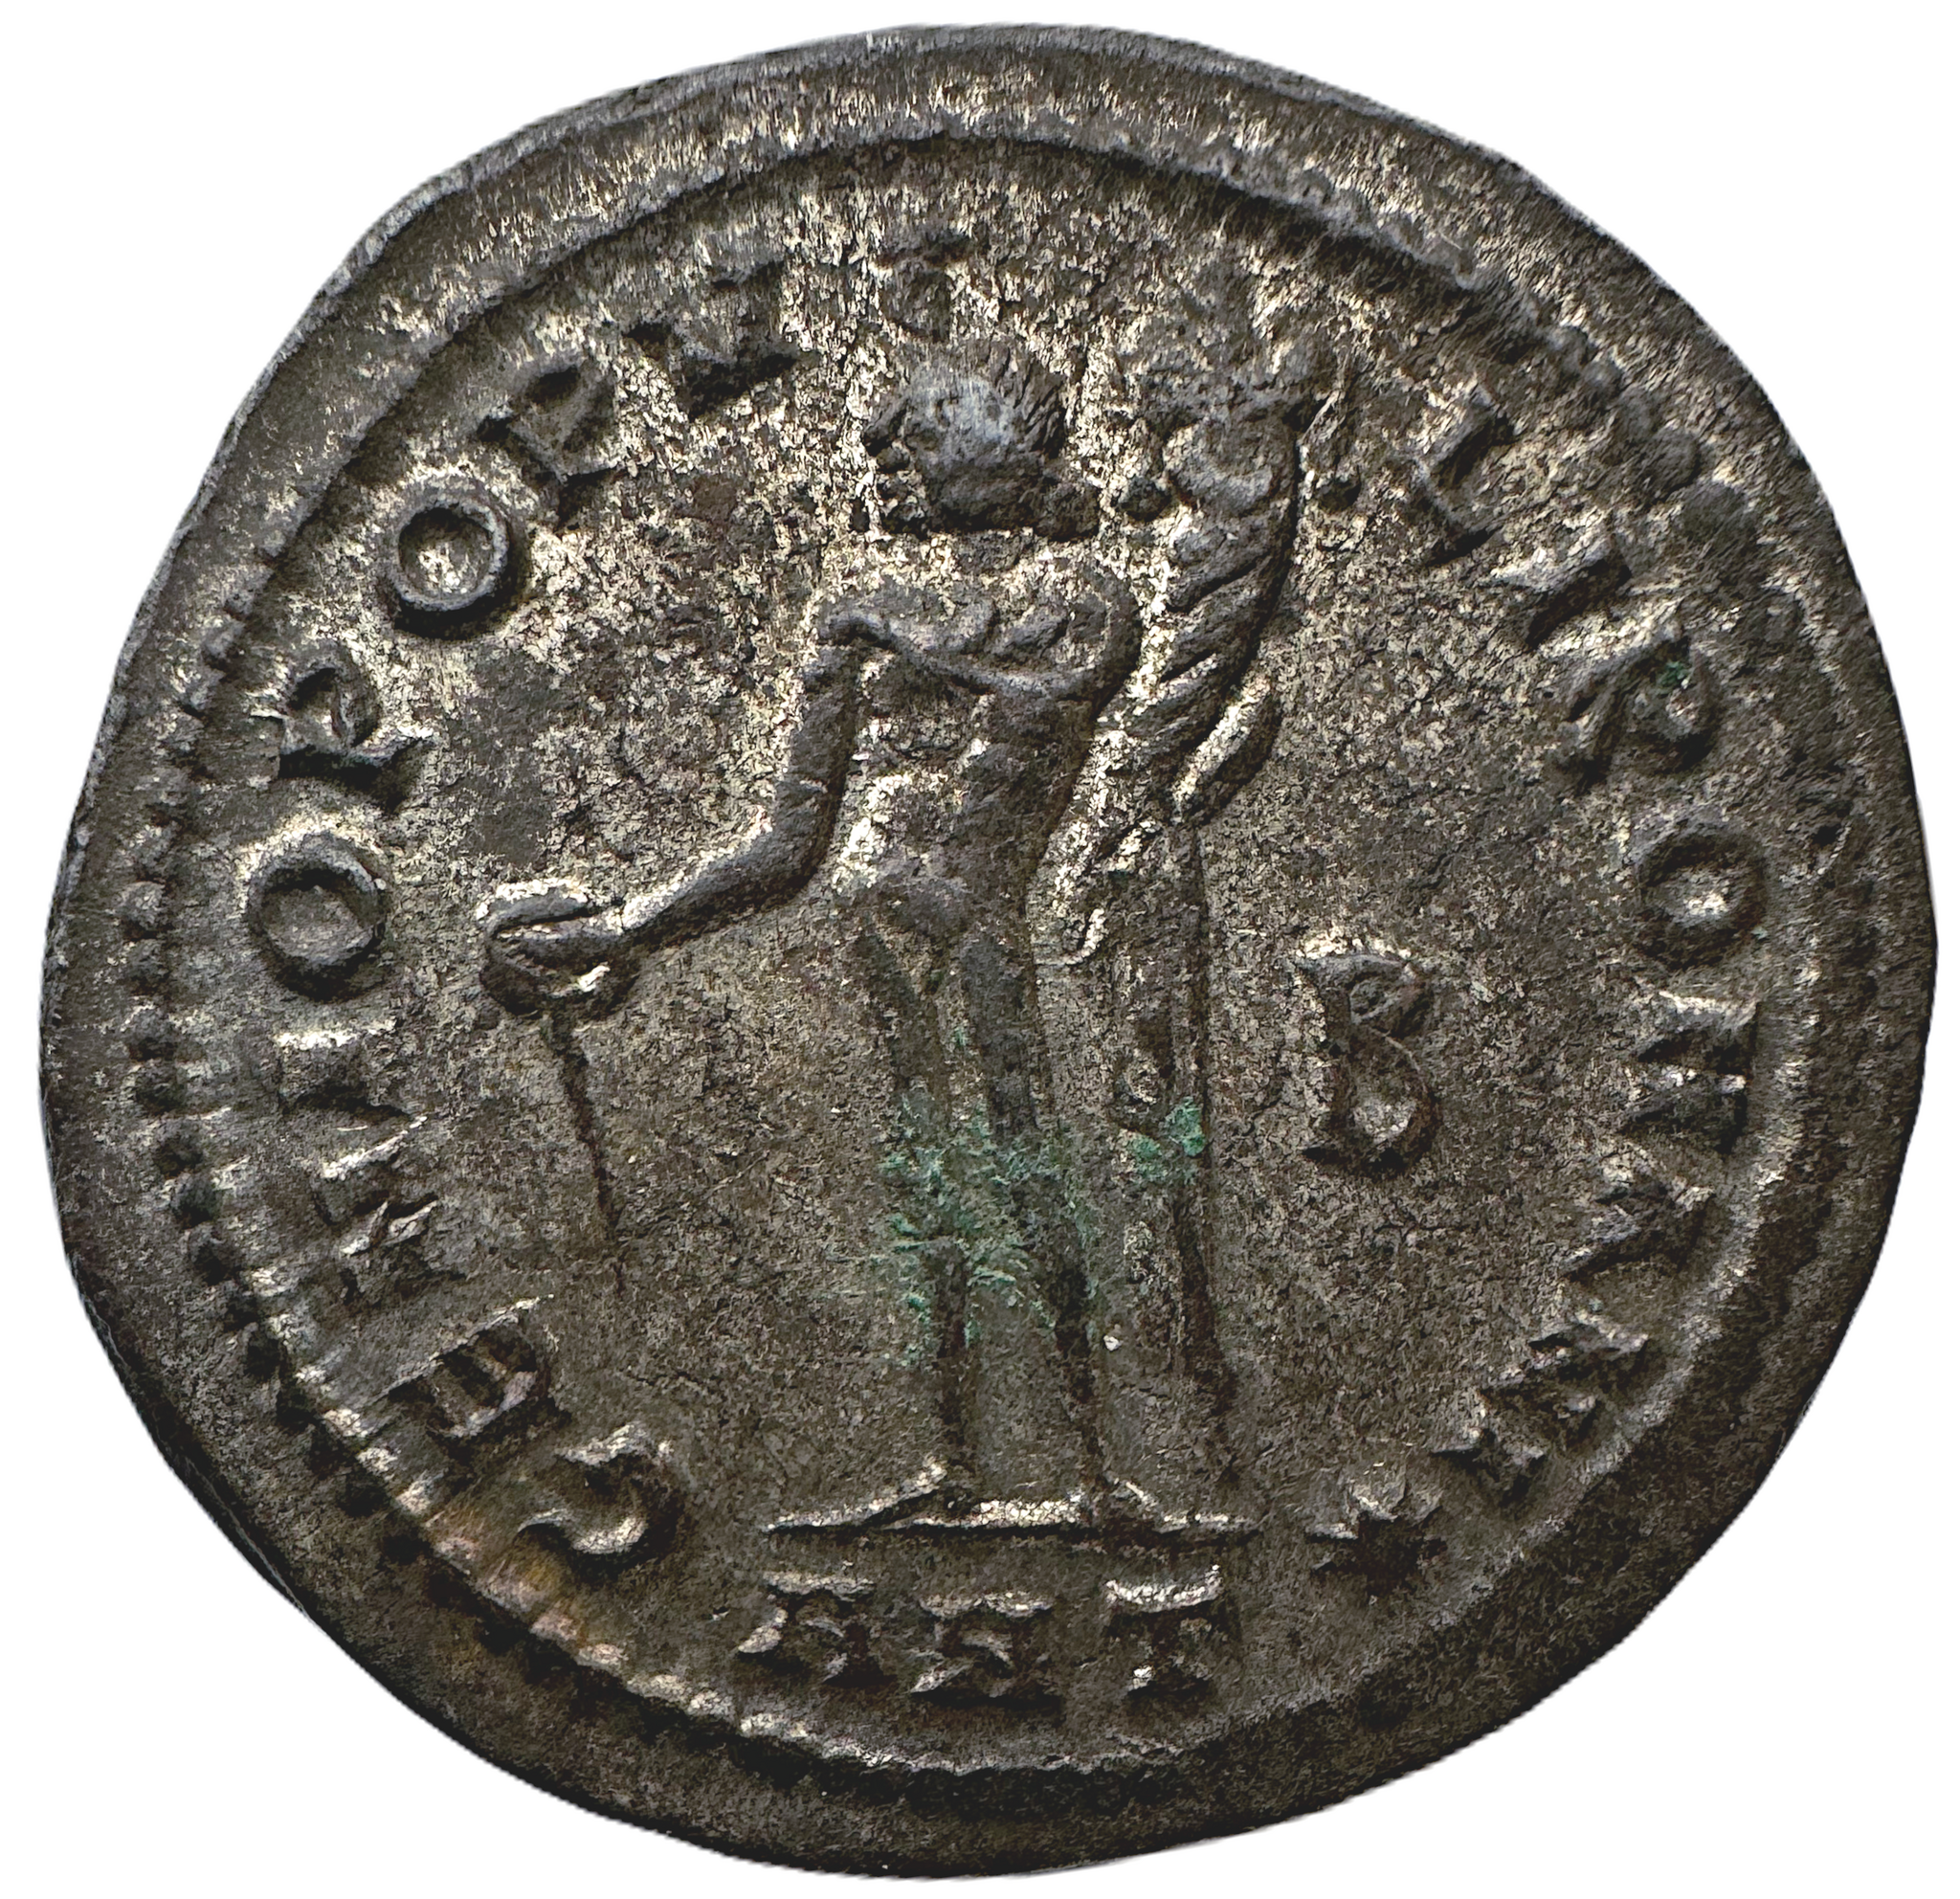 Maximianus 286-310 e.Kr - Follis med fin silverlyster, präglad i Antiochia